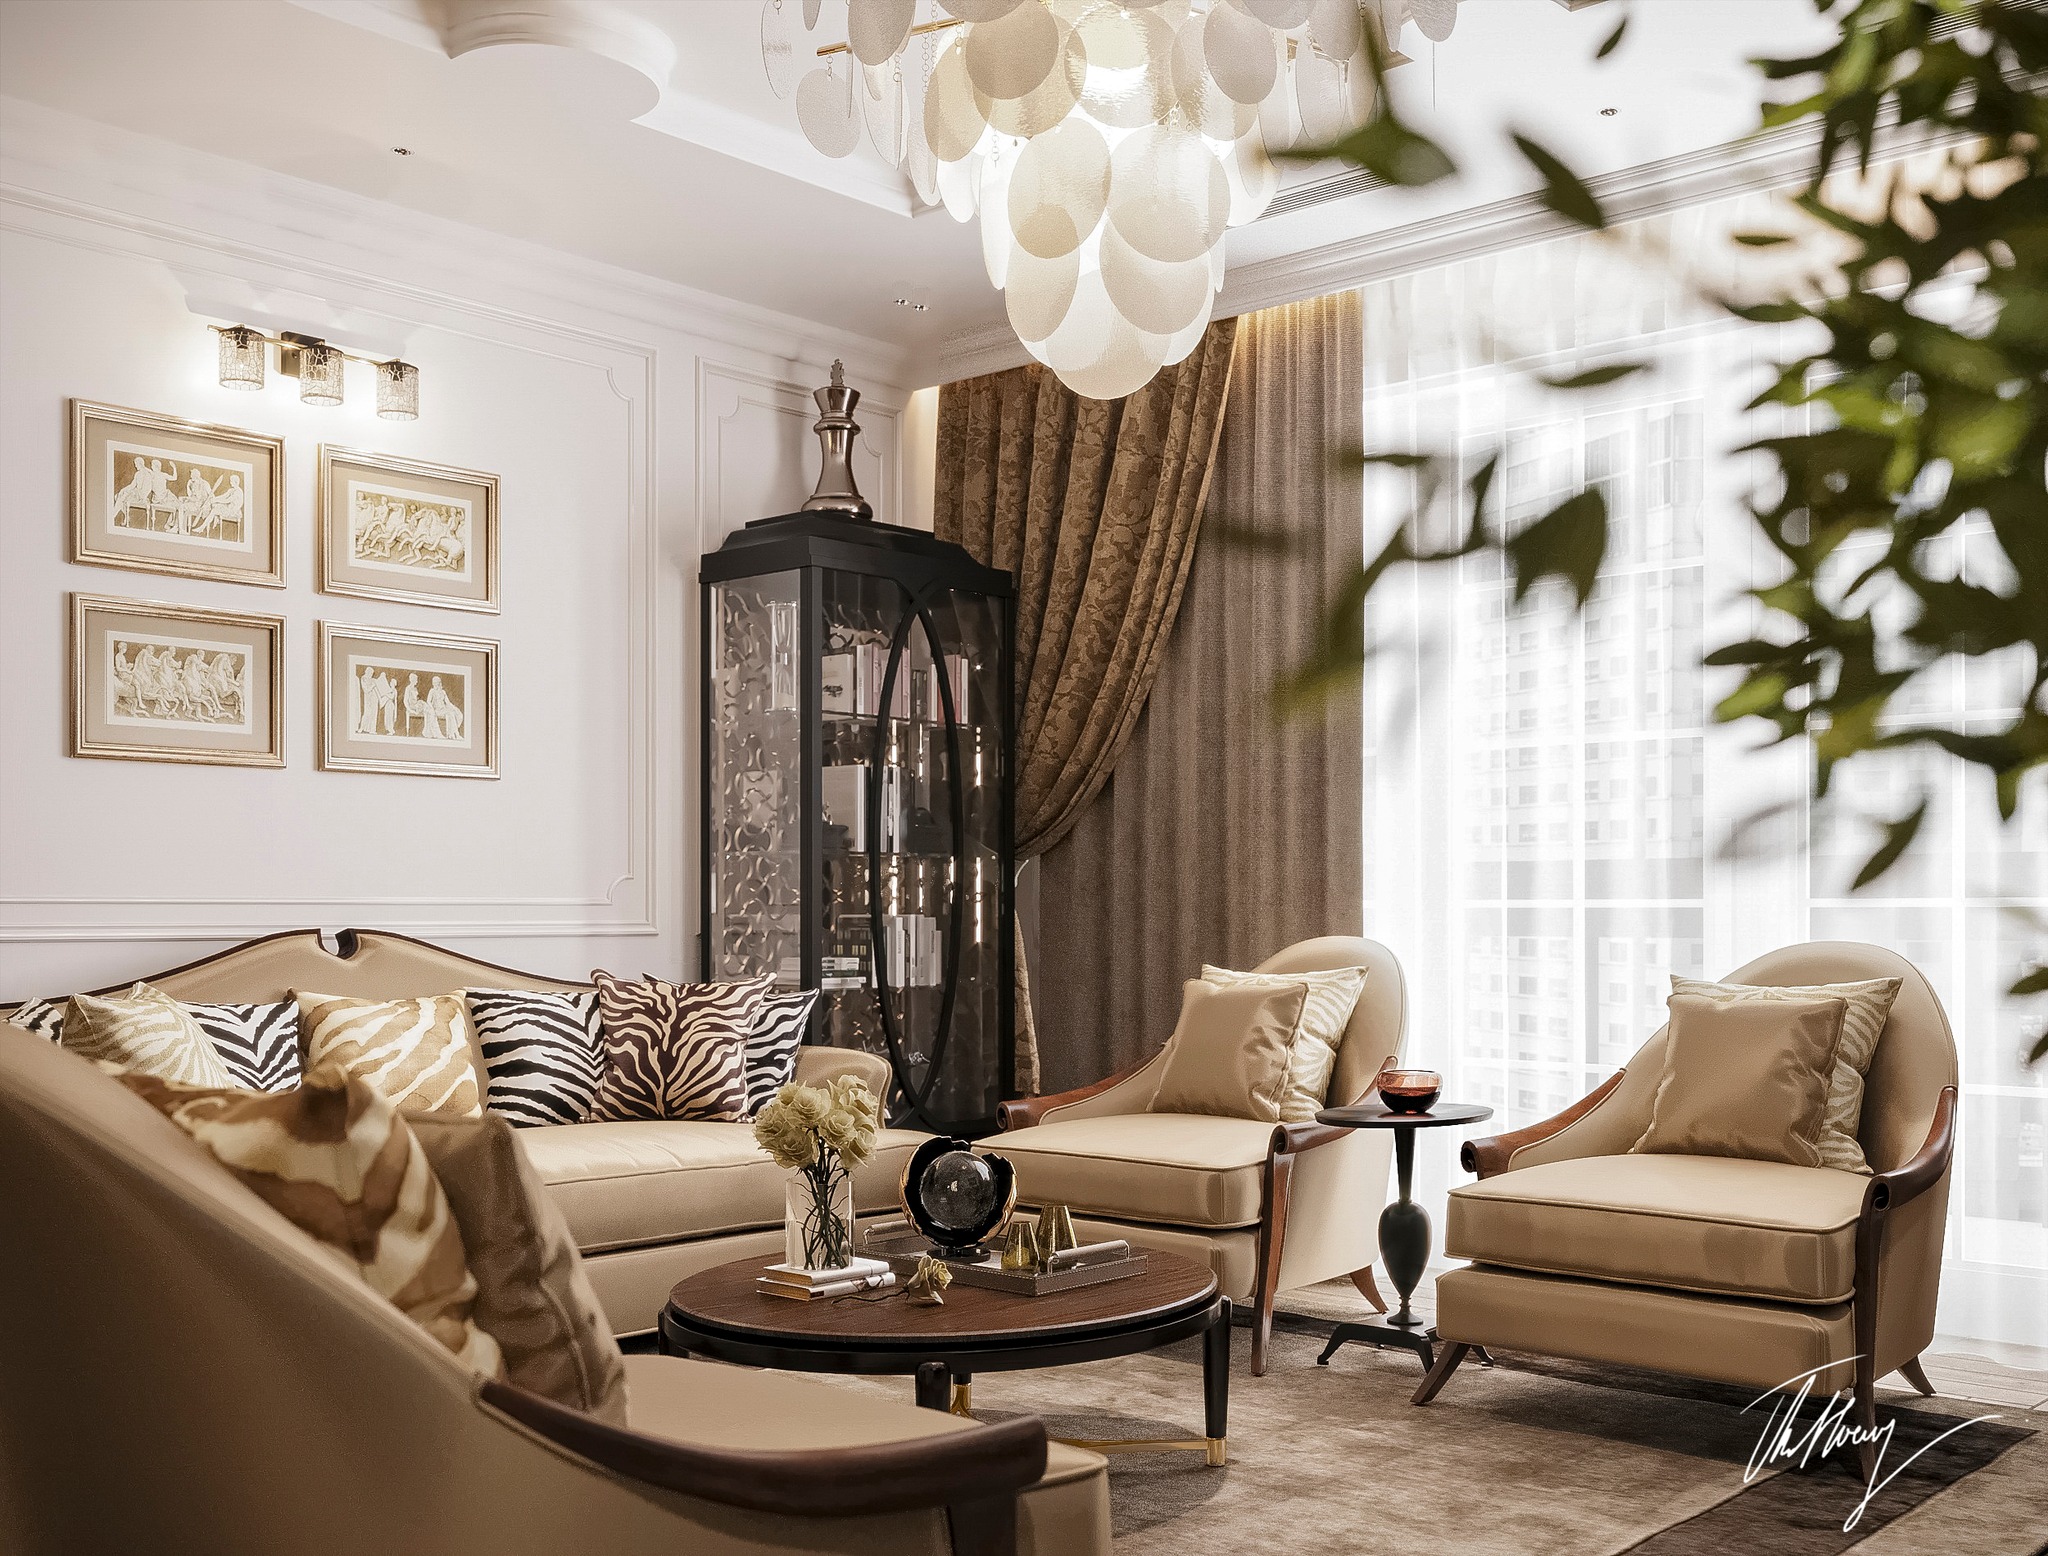 Free living room 3d models for download